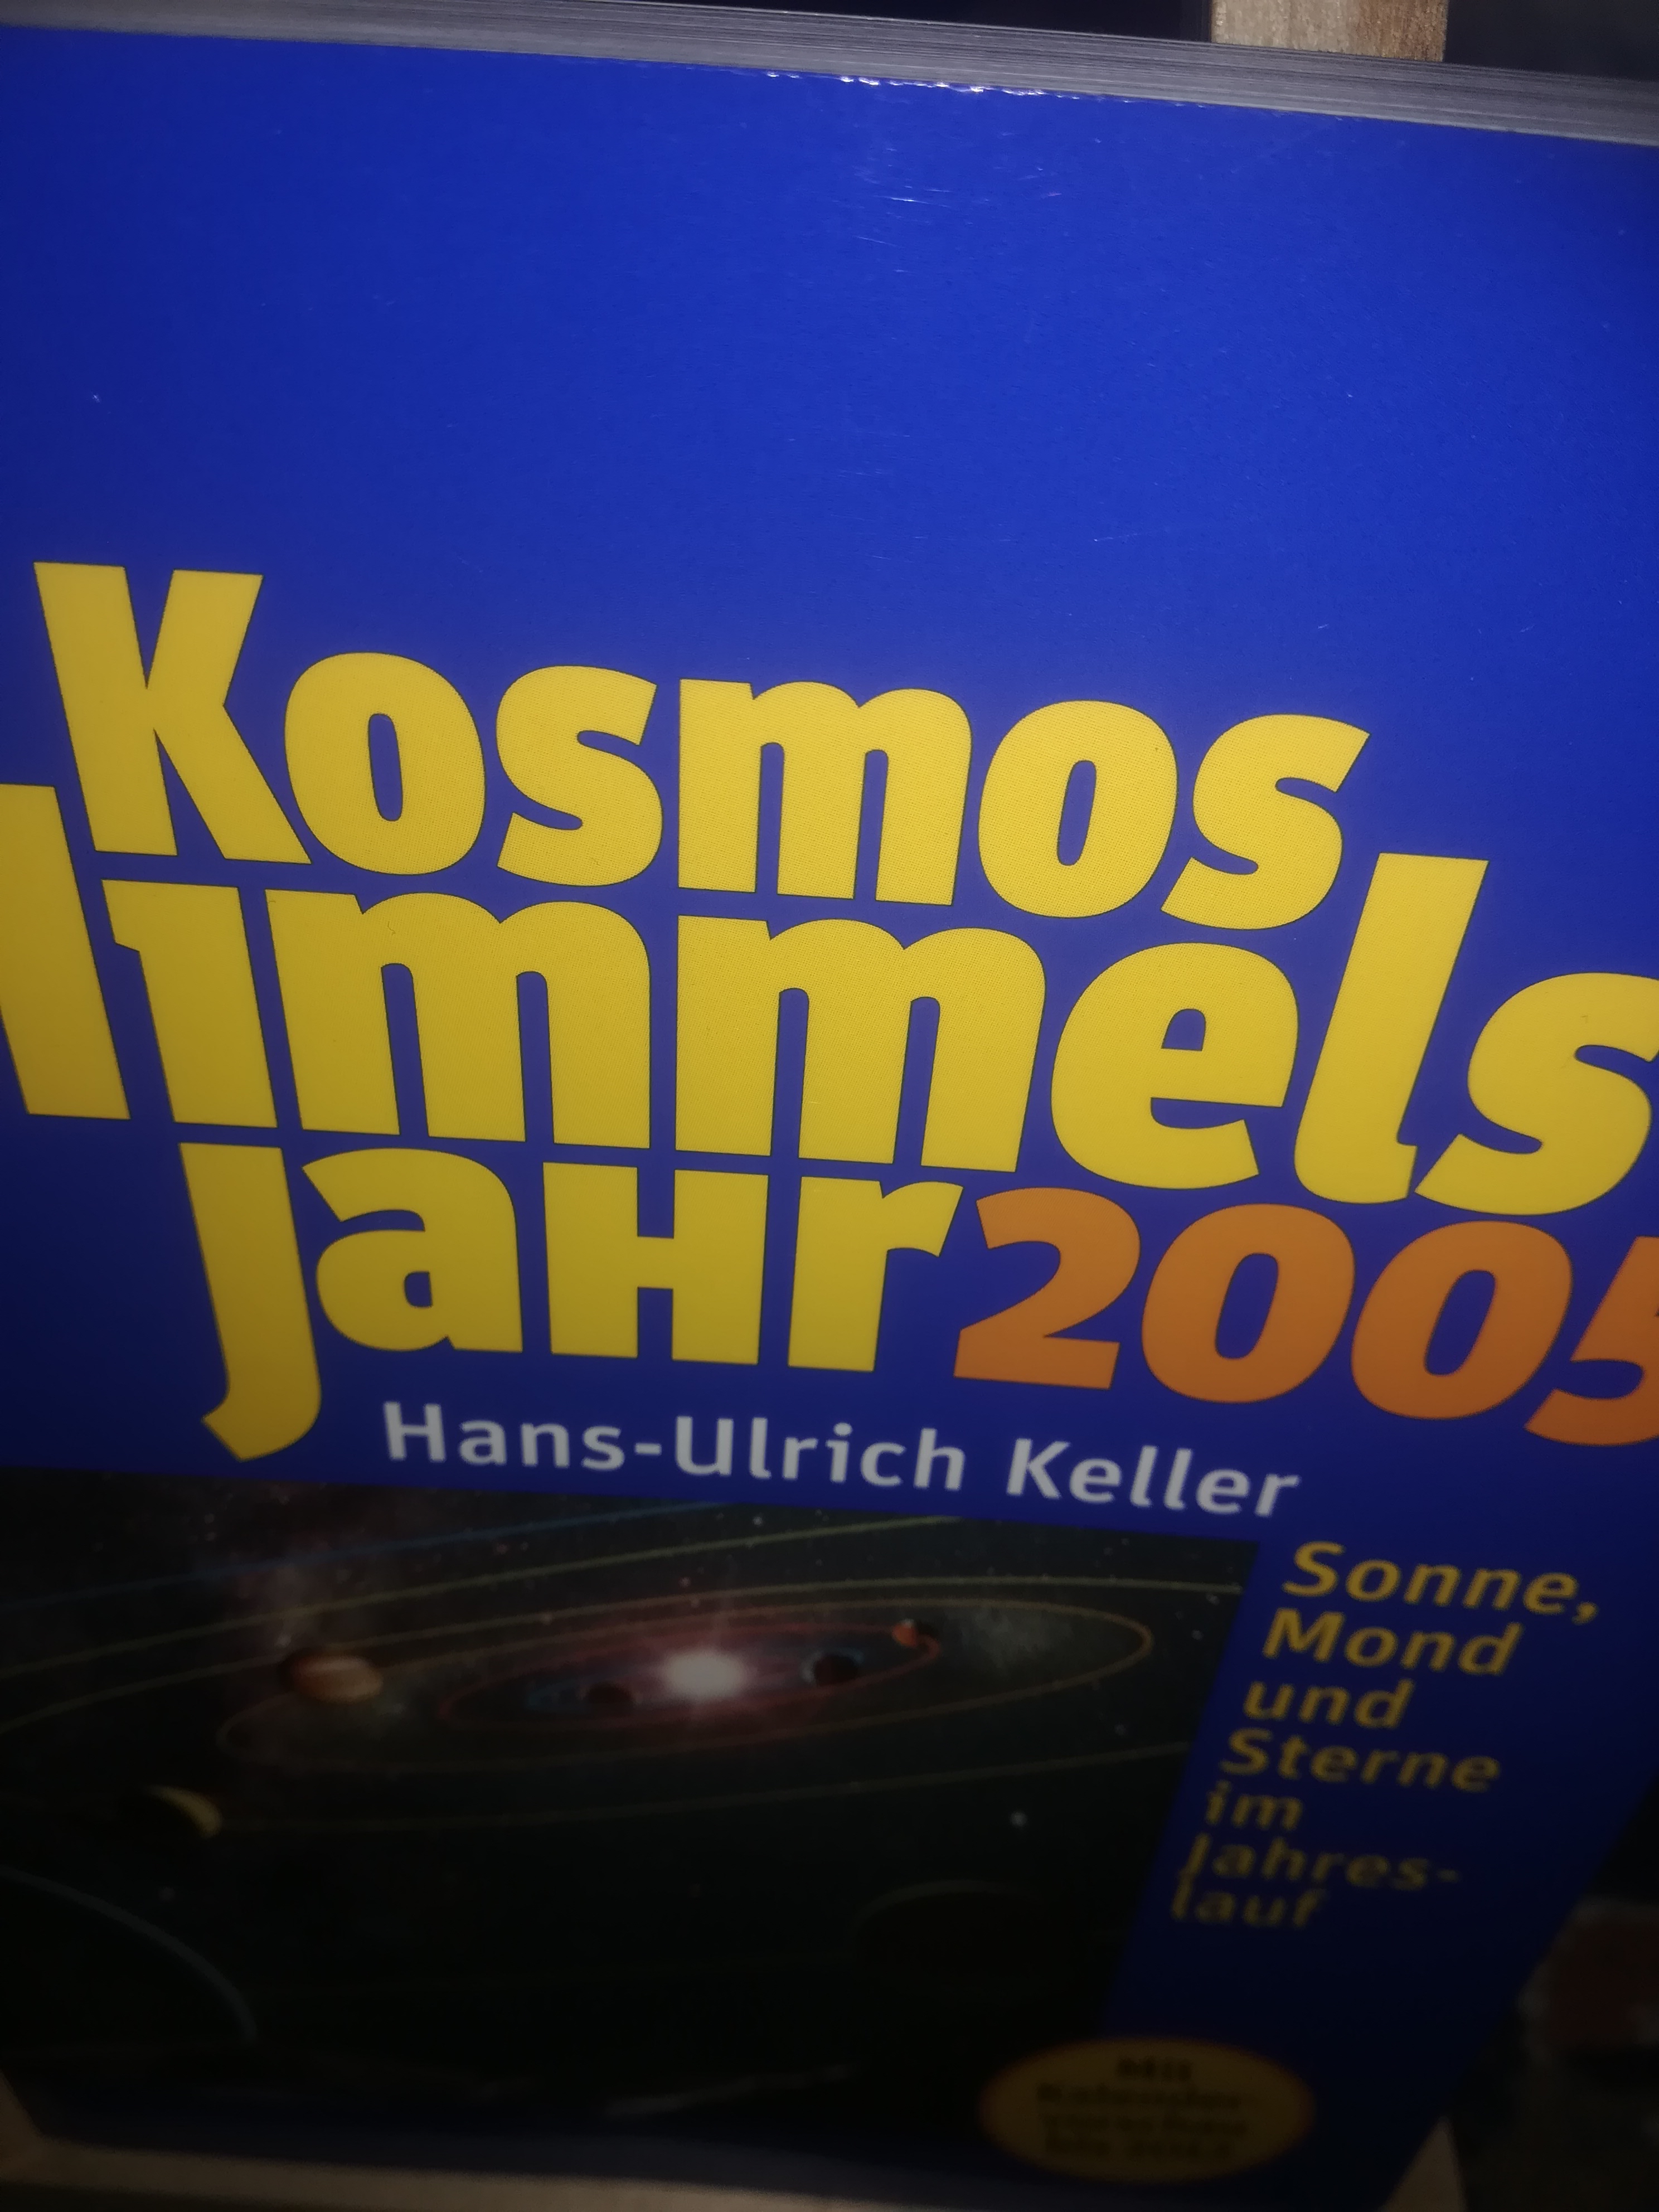 Kosmos Himmelsjahr 2005, Sonne, Mond und Sterne im Jahreslauf - Keller Hans Ulrich